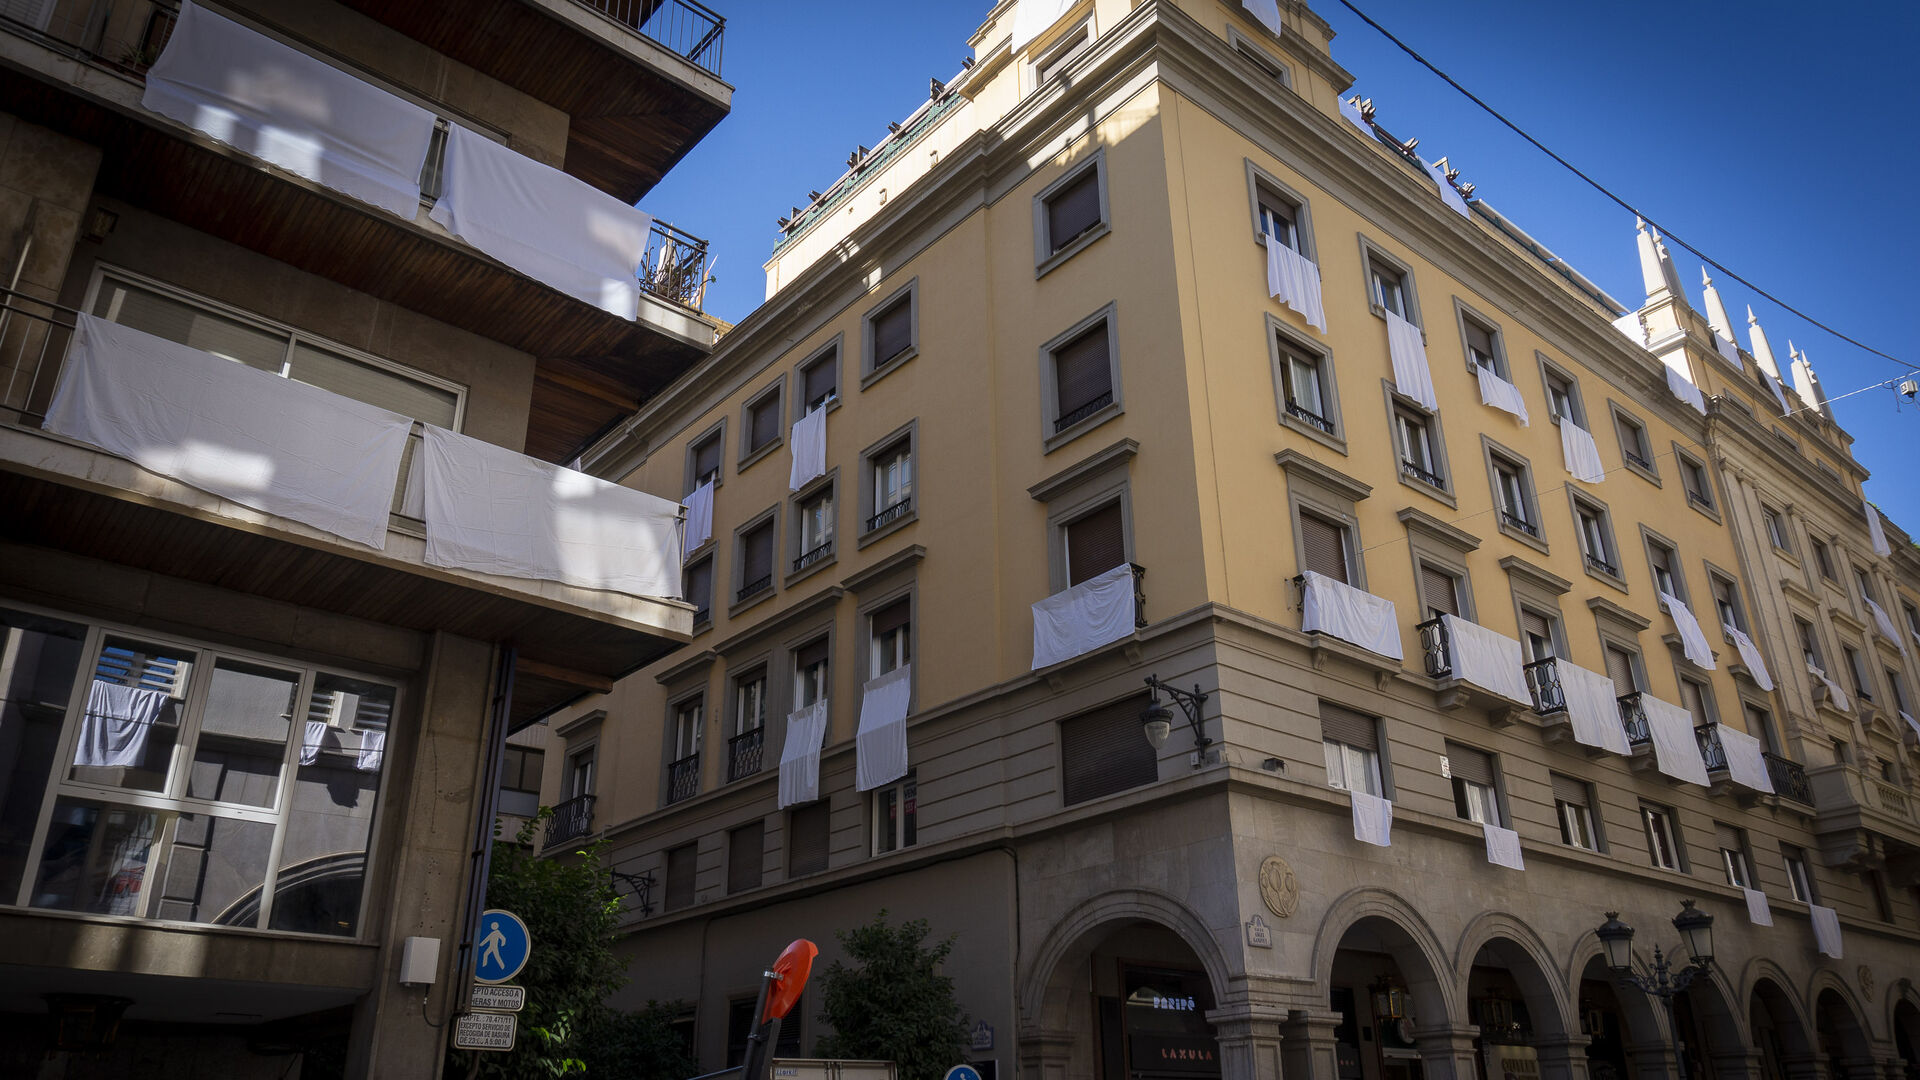 Fotos: Calle Ganivet de Granada vestida con s&aacute;banas blancas como protesta vecinal por los ruidos